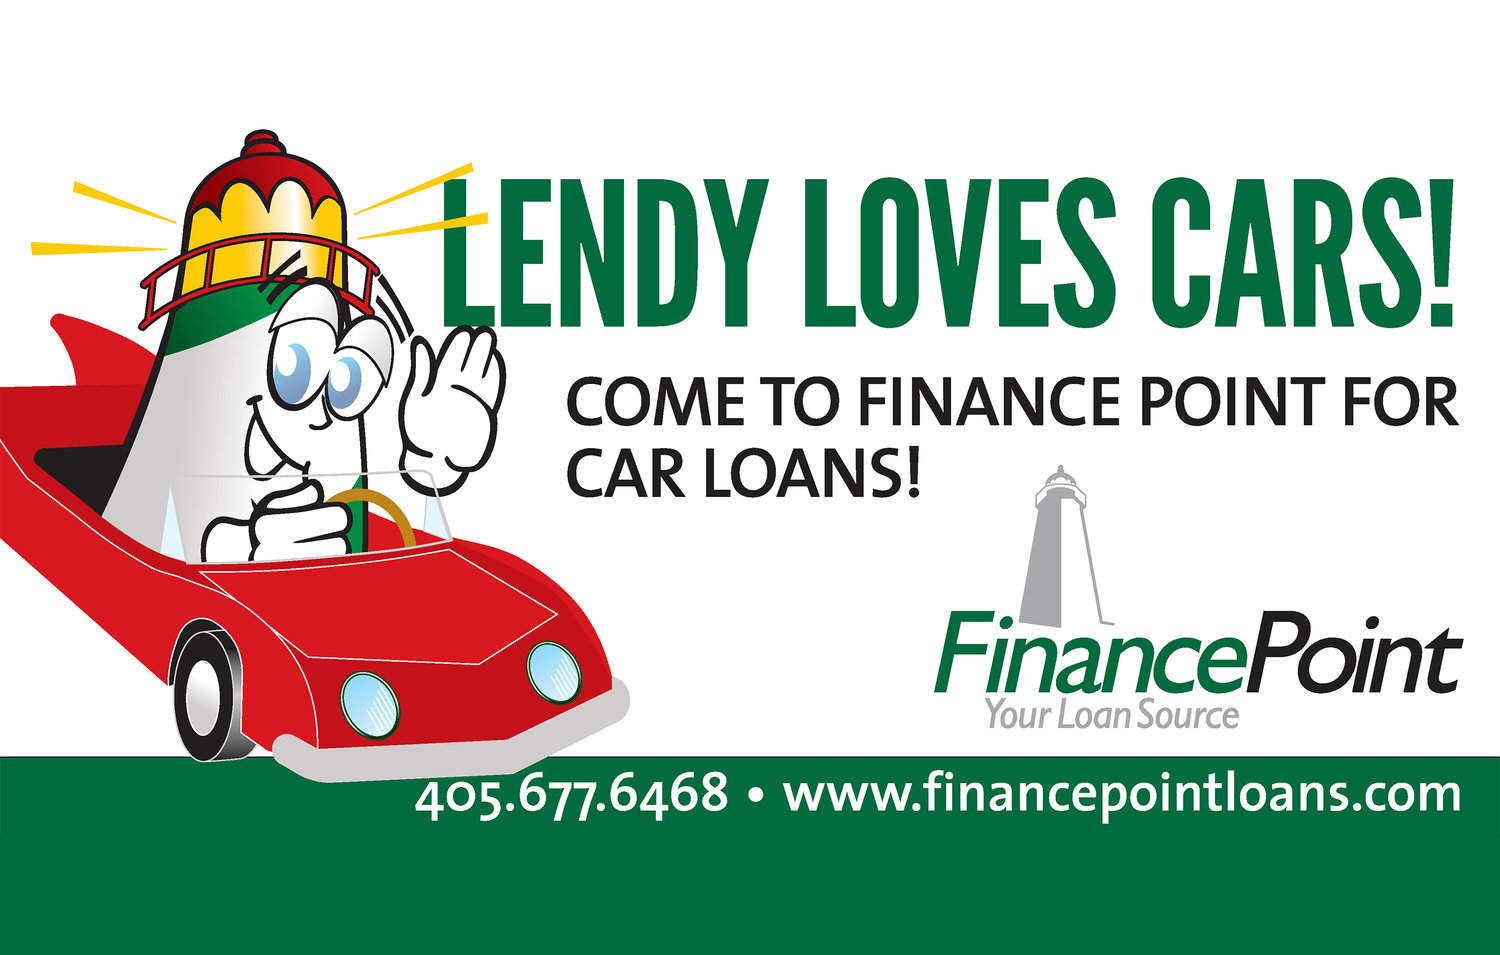 FinancePoint Loans